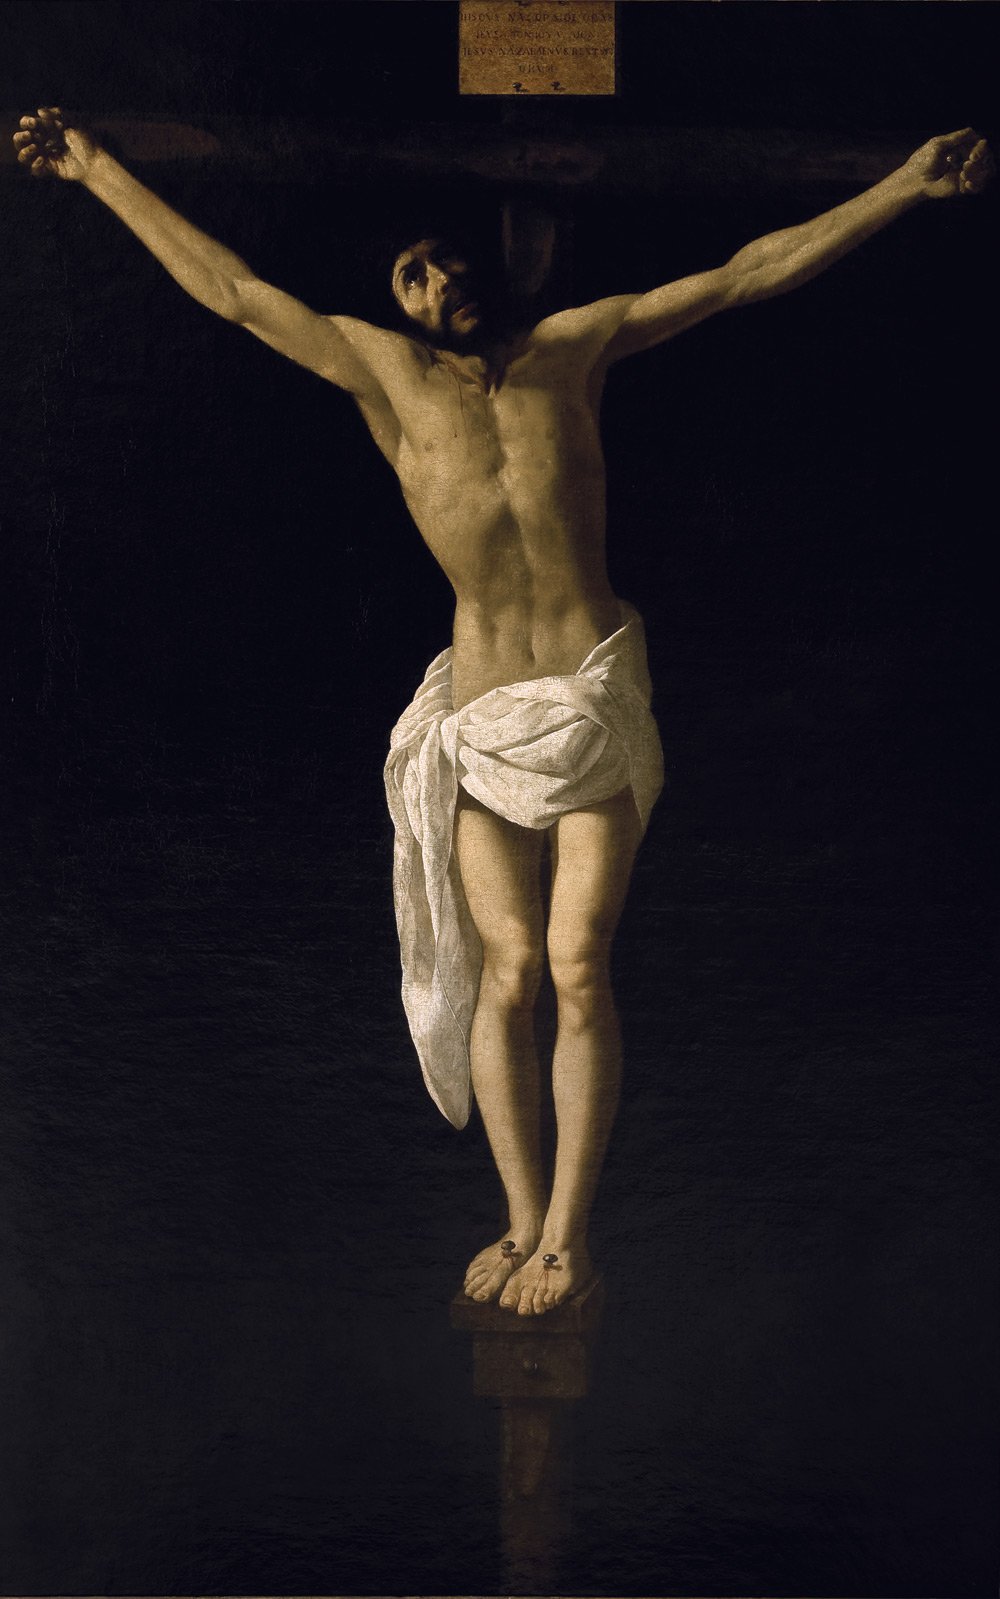 Crocifissione by Francisco de Zurbarán - circa 1630 - 168,90 x 109,80 cm 